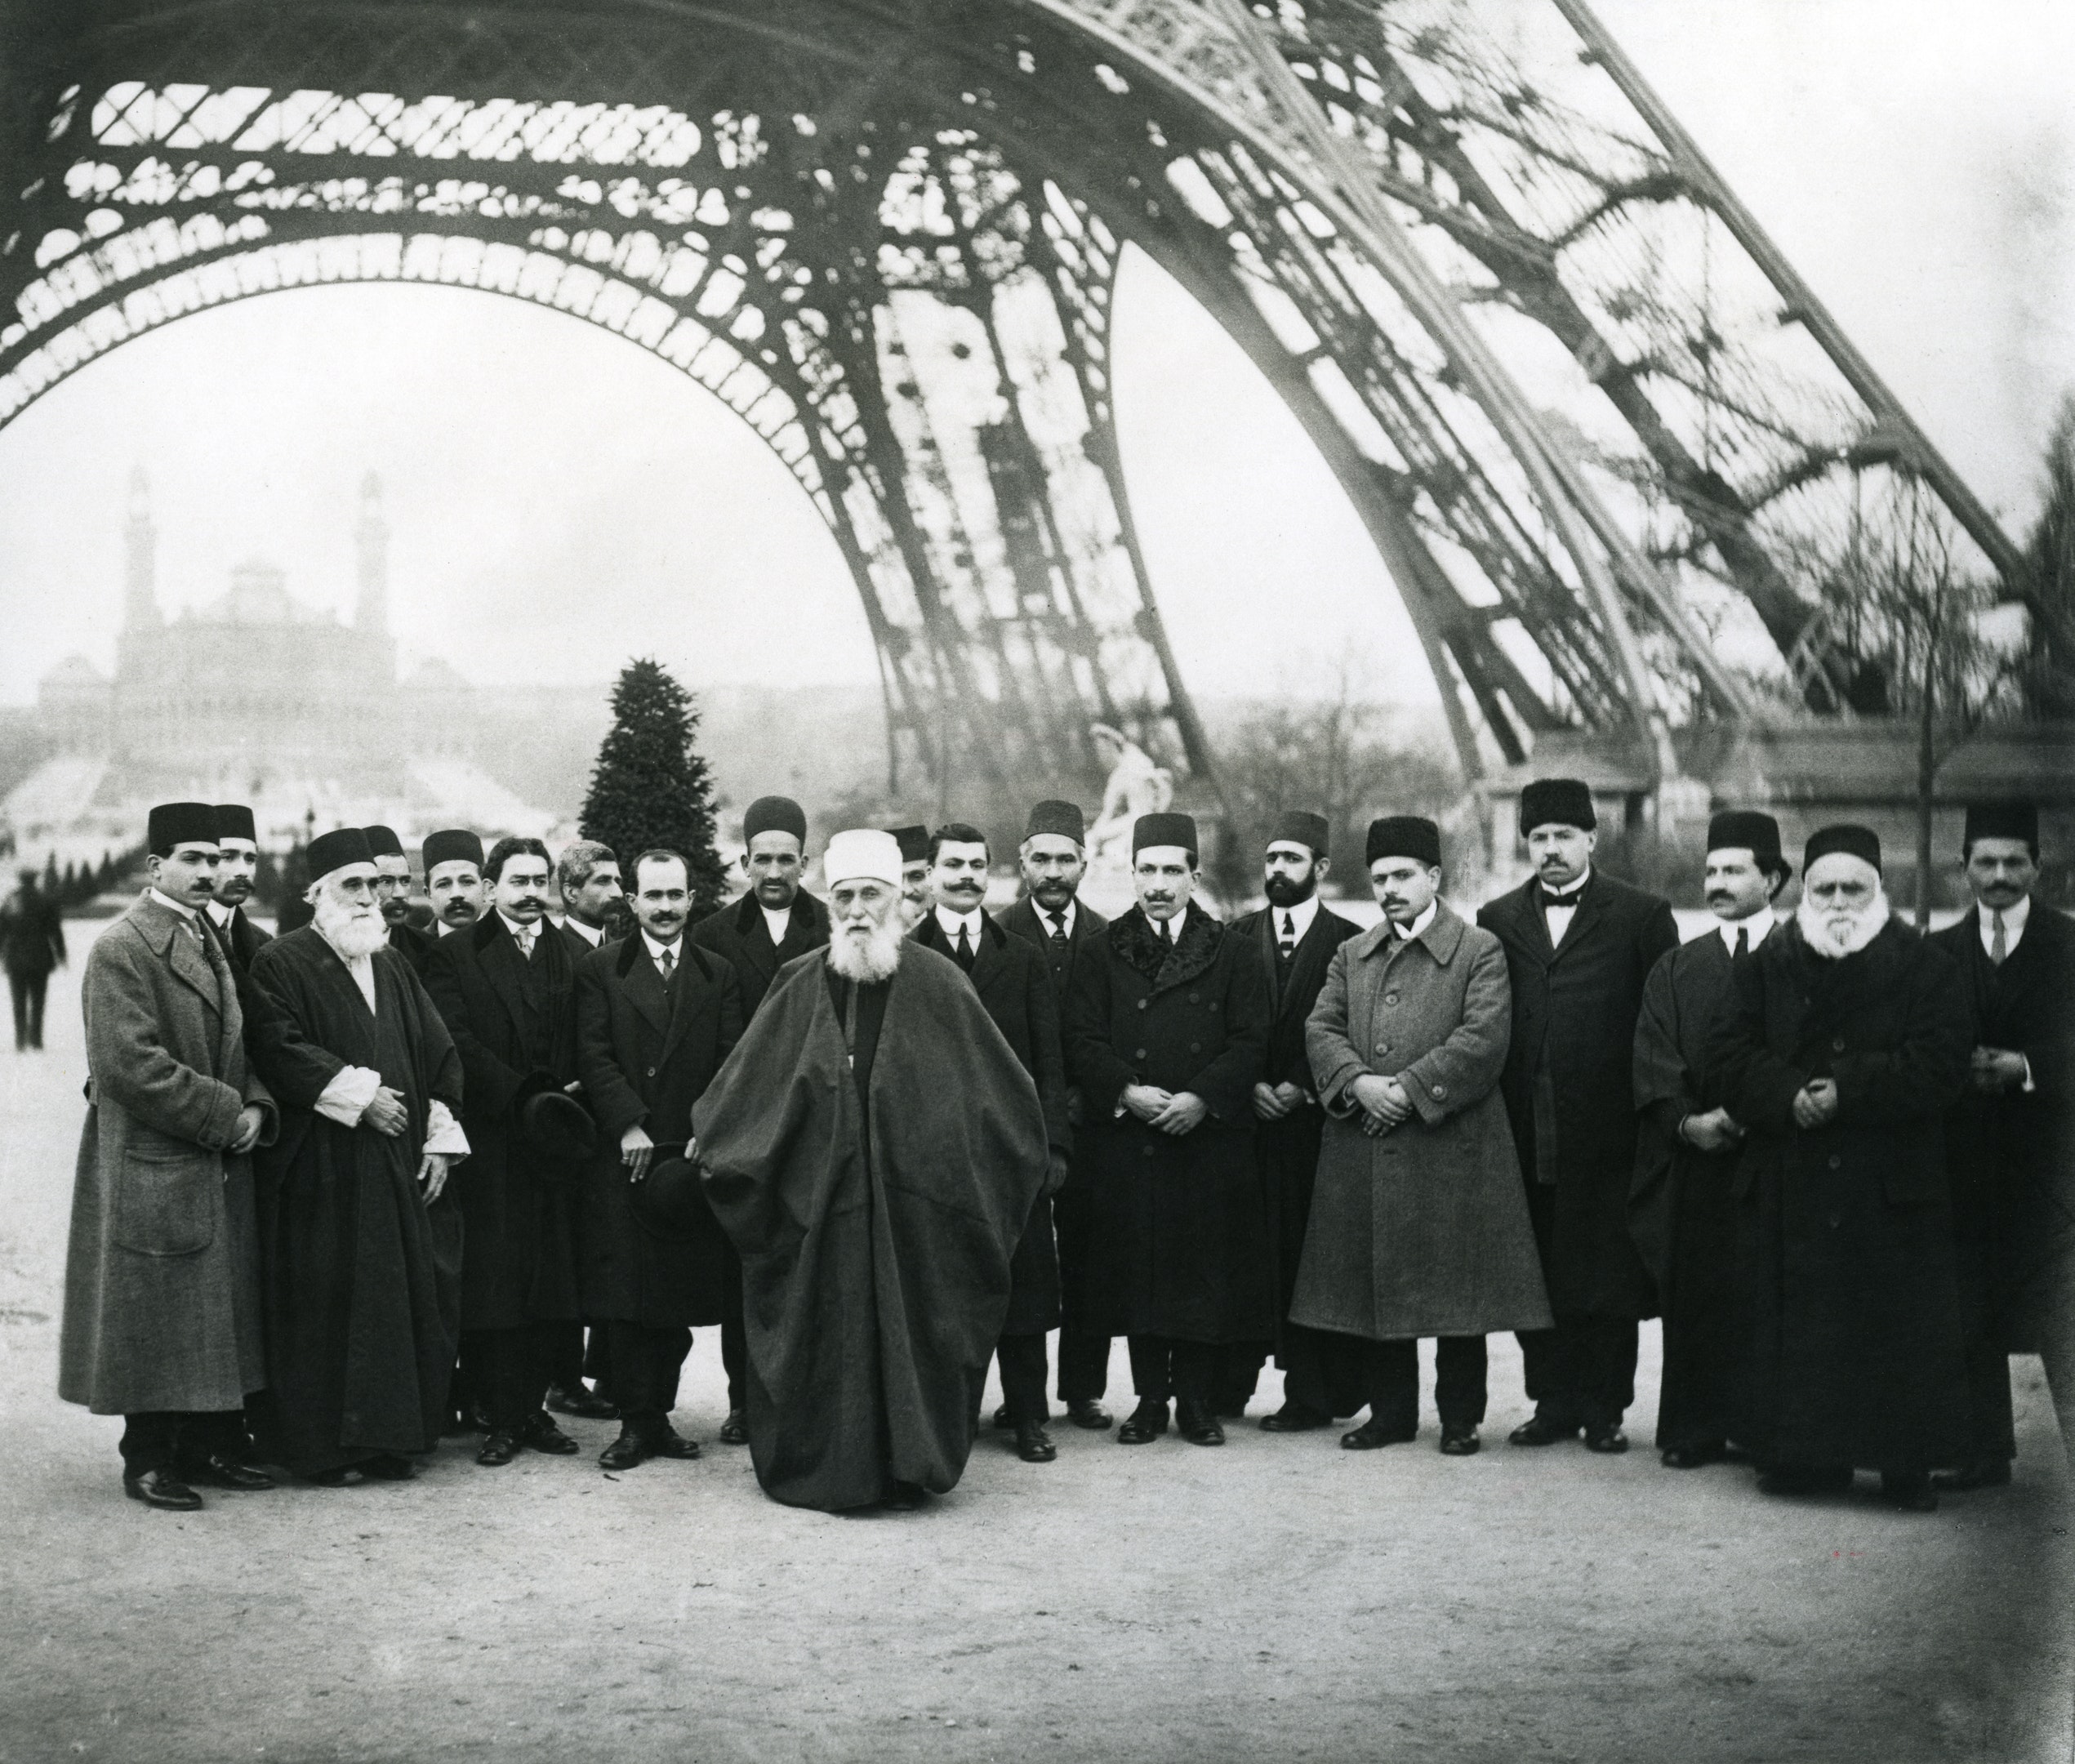 ‘Abdu’l-Bahá with a group of Bahá’ís under the Eiffel Tower in Paris, France, January 1913